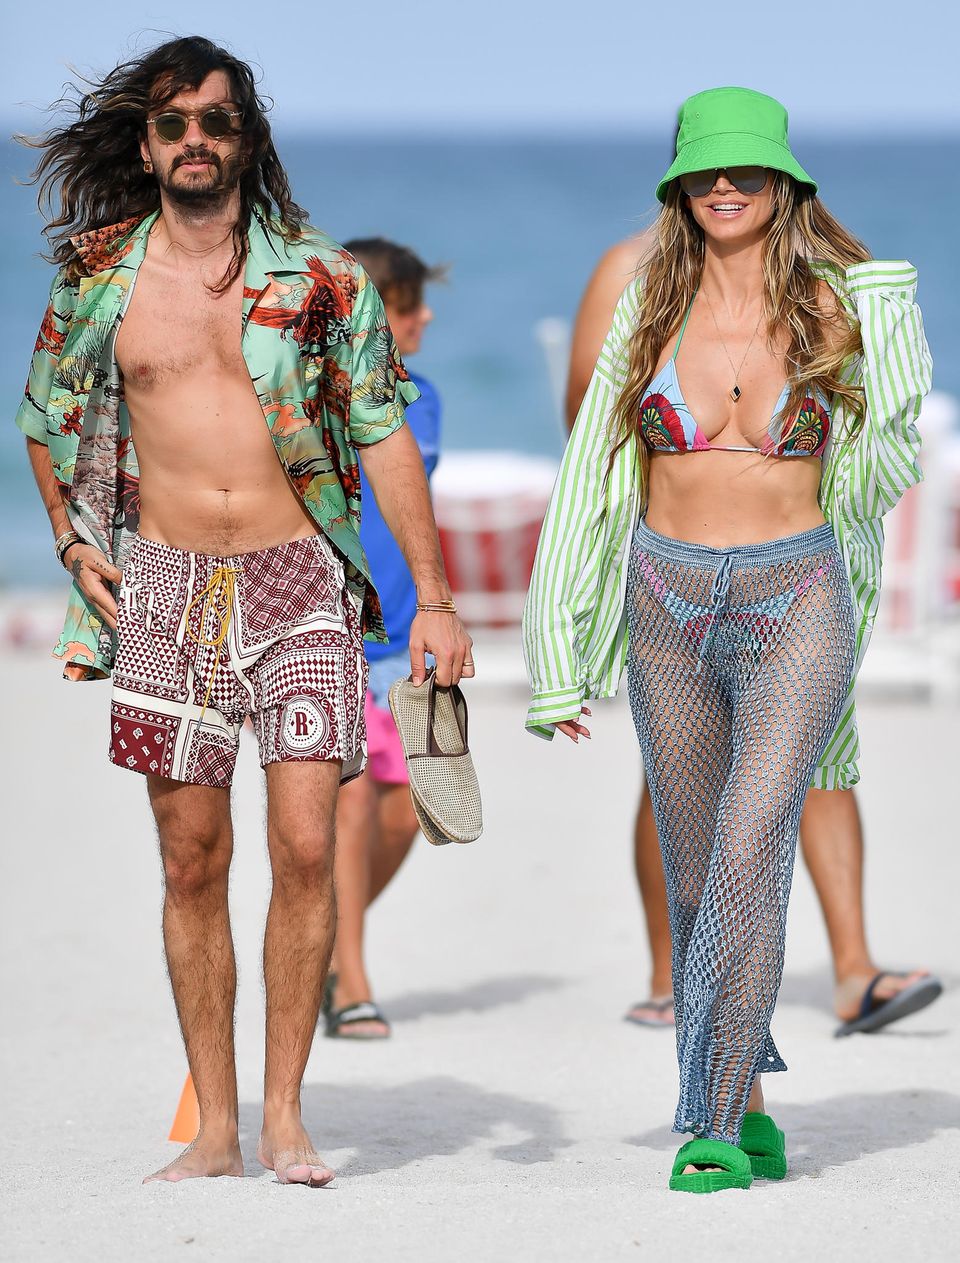 Harmonie pur bei Heidi und Tom – und das auch optisch! Gut gelaunt zeigt sich das Paar am Strand von Miami und scheint sich in Sachen Beach-Style definitiv einig zu sein. In knalligen Farben, knappen Schnitten und wilden Mustern ziehen die beiden definitiv alle Blicke auf sich.